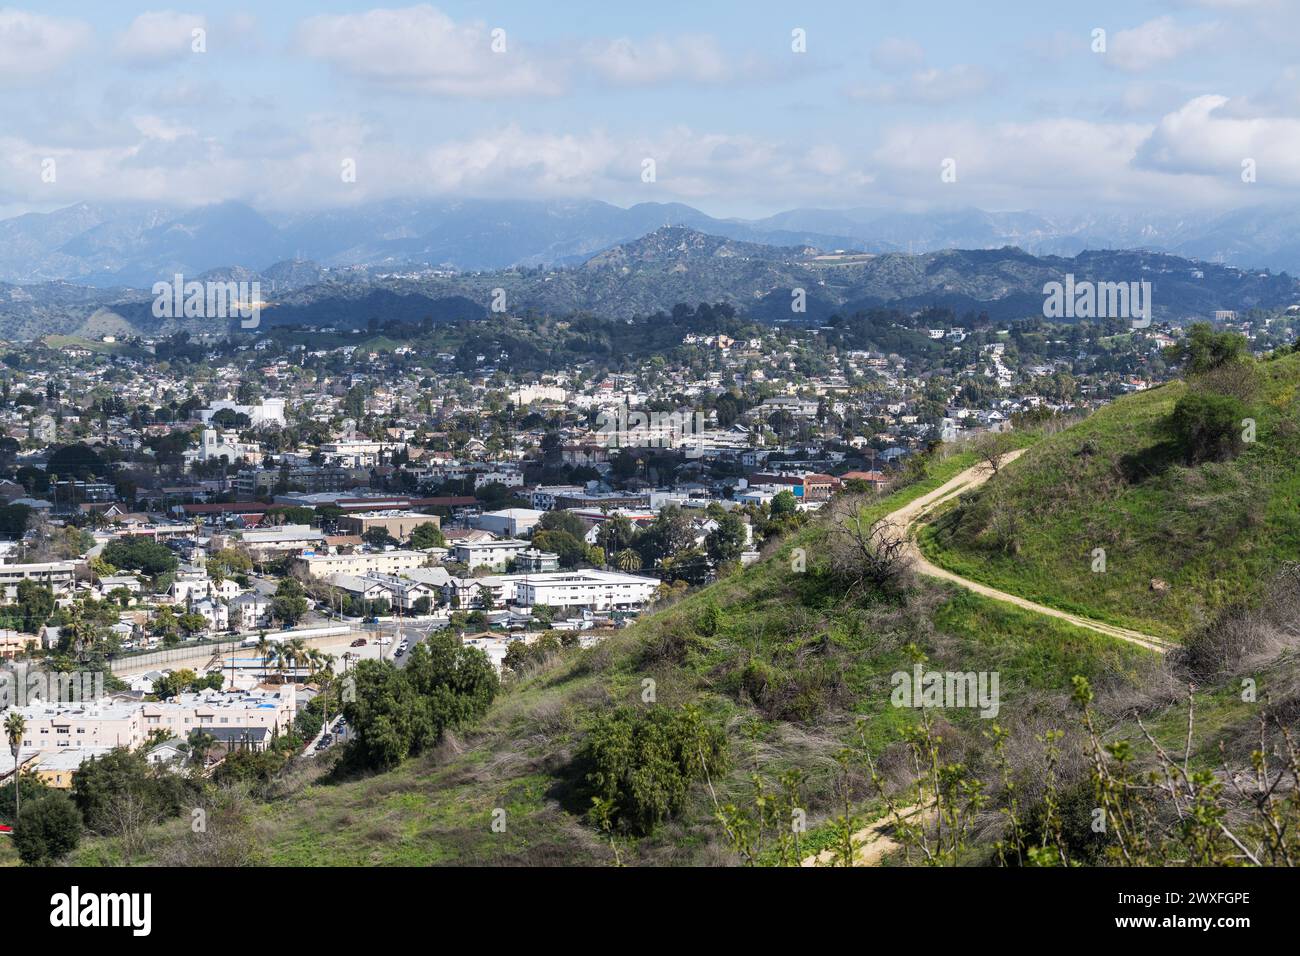 Sentier de randonnée à flanc de colline au-dessus du quartier Highland Park à Los Angeles, Californie. Banque D'Images